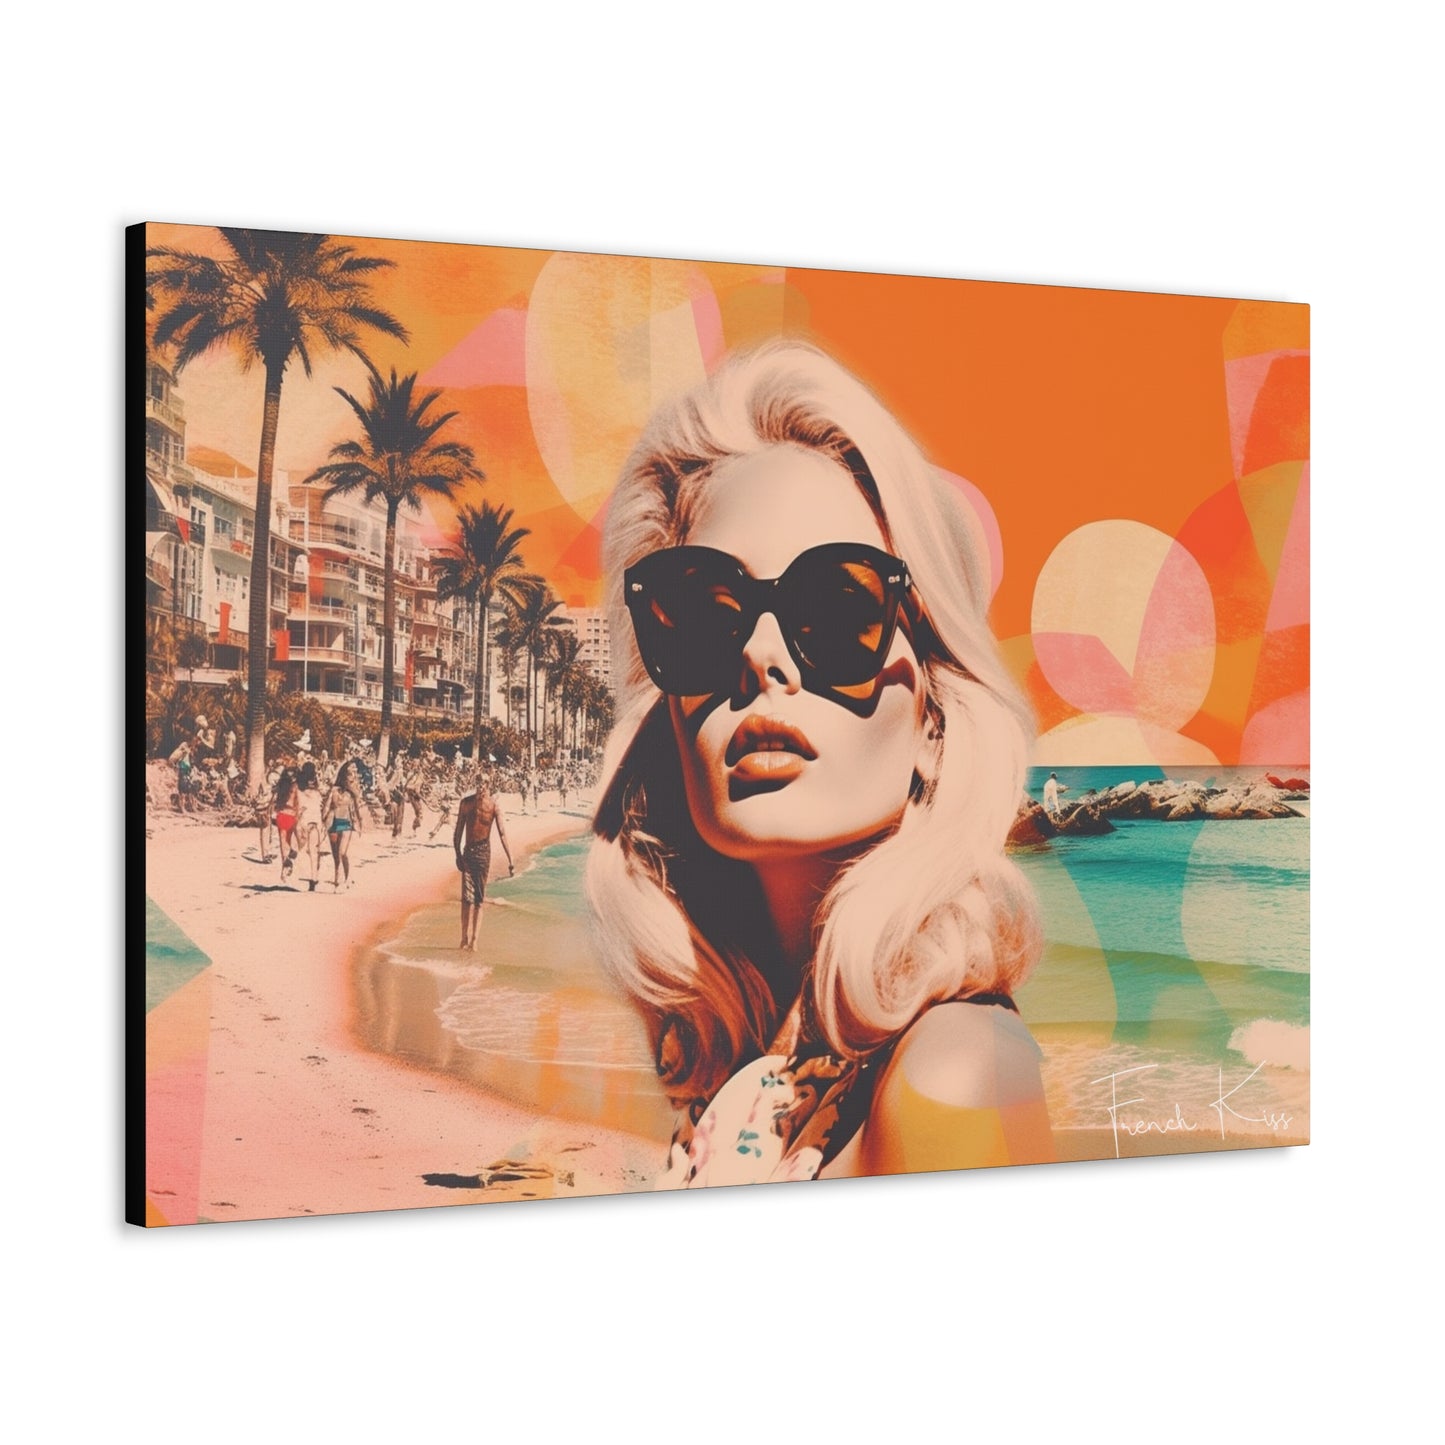 COTE SOLEIL French Kiss Pop Art, Gallery, Canvas, Art, Vintage, Retro, St. Tropez, Collection, French Riviera, Travel, Cote d'Azur, Cannes, Pop Art, Decor